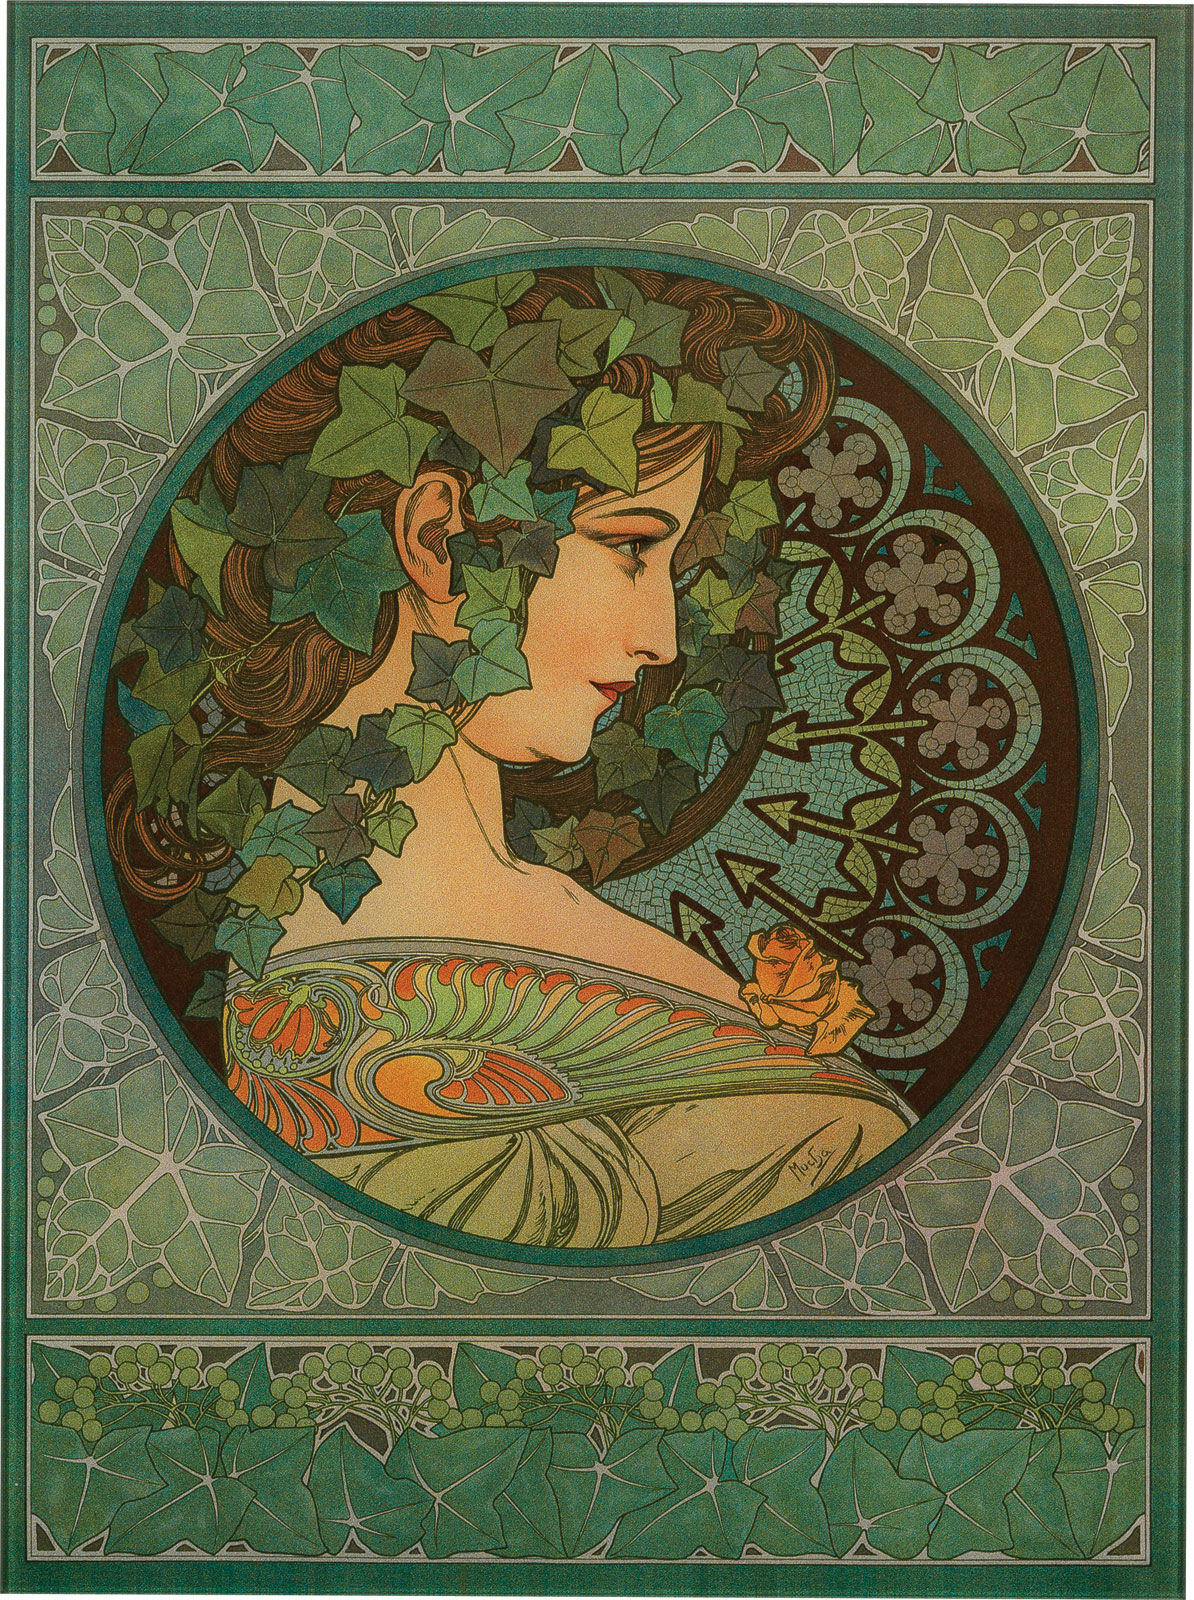 Glasbild "Efeu" (1901) von Alphonse Mucha